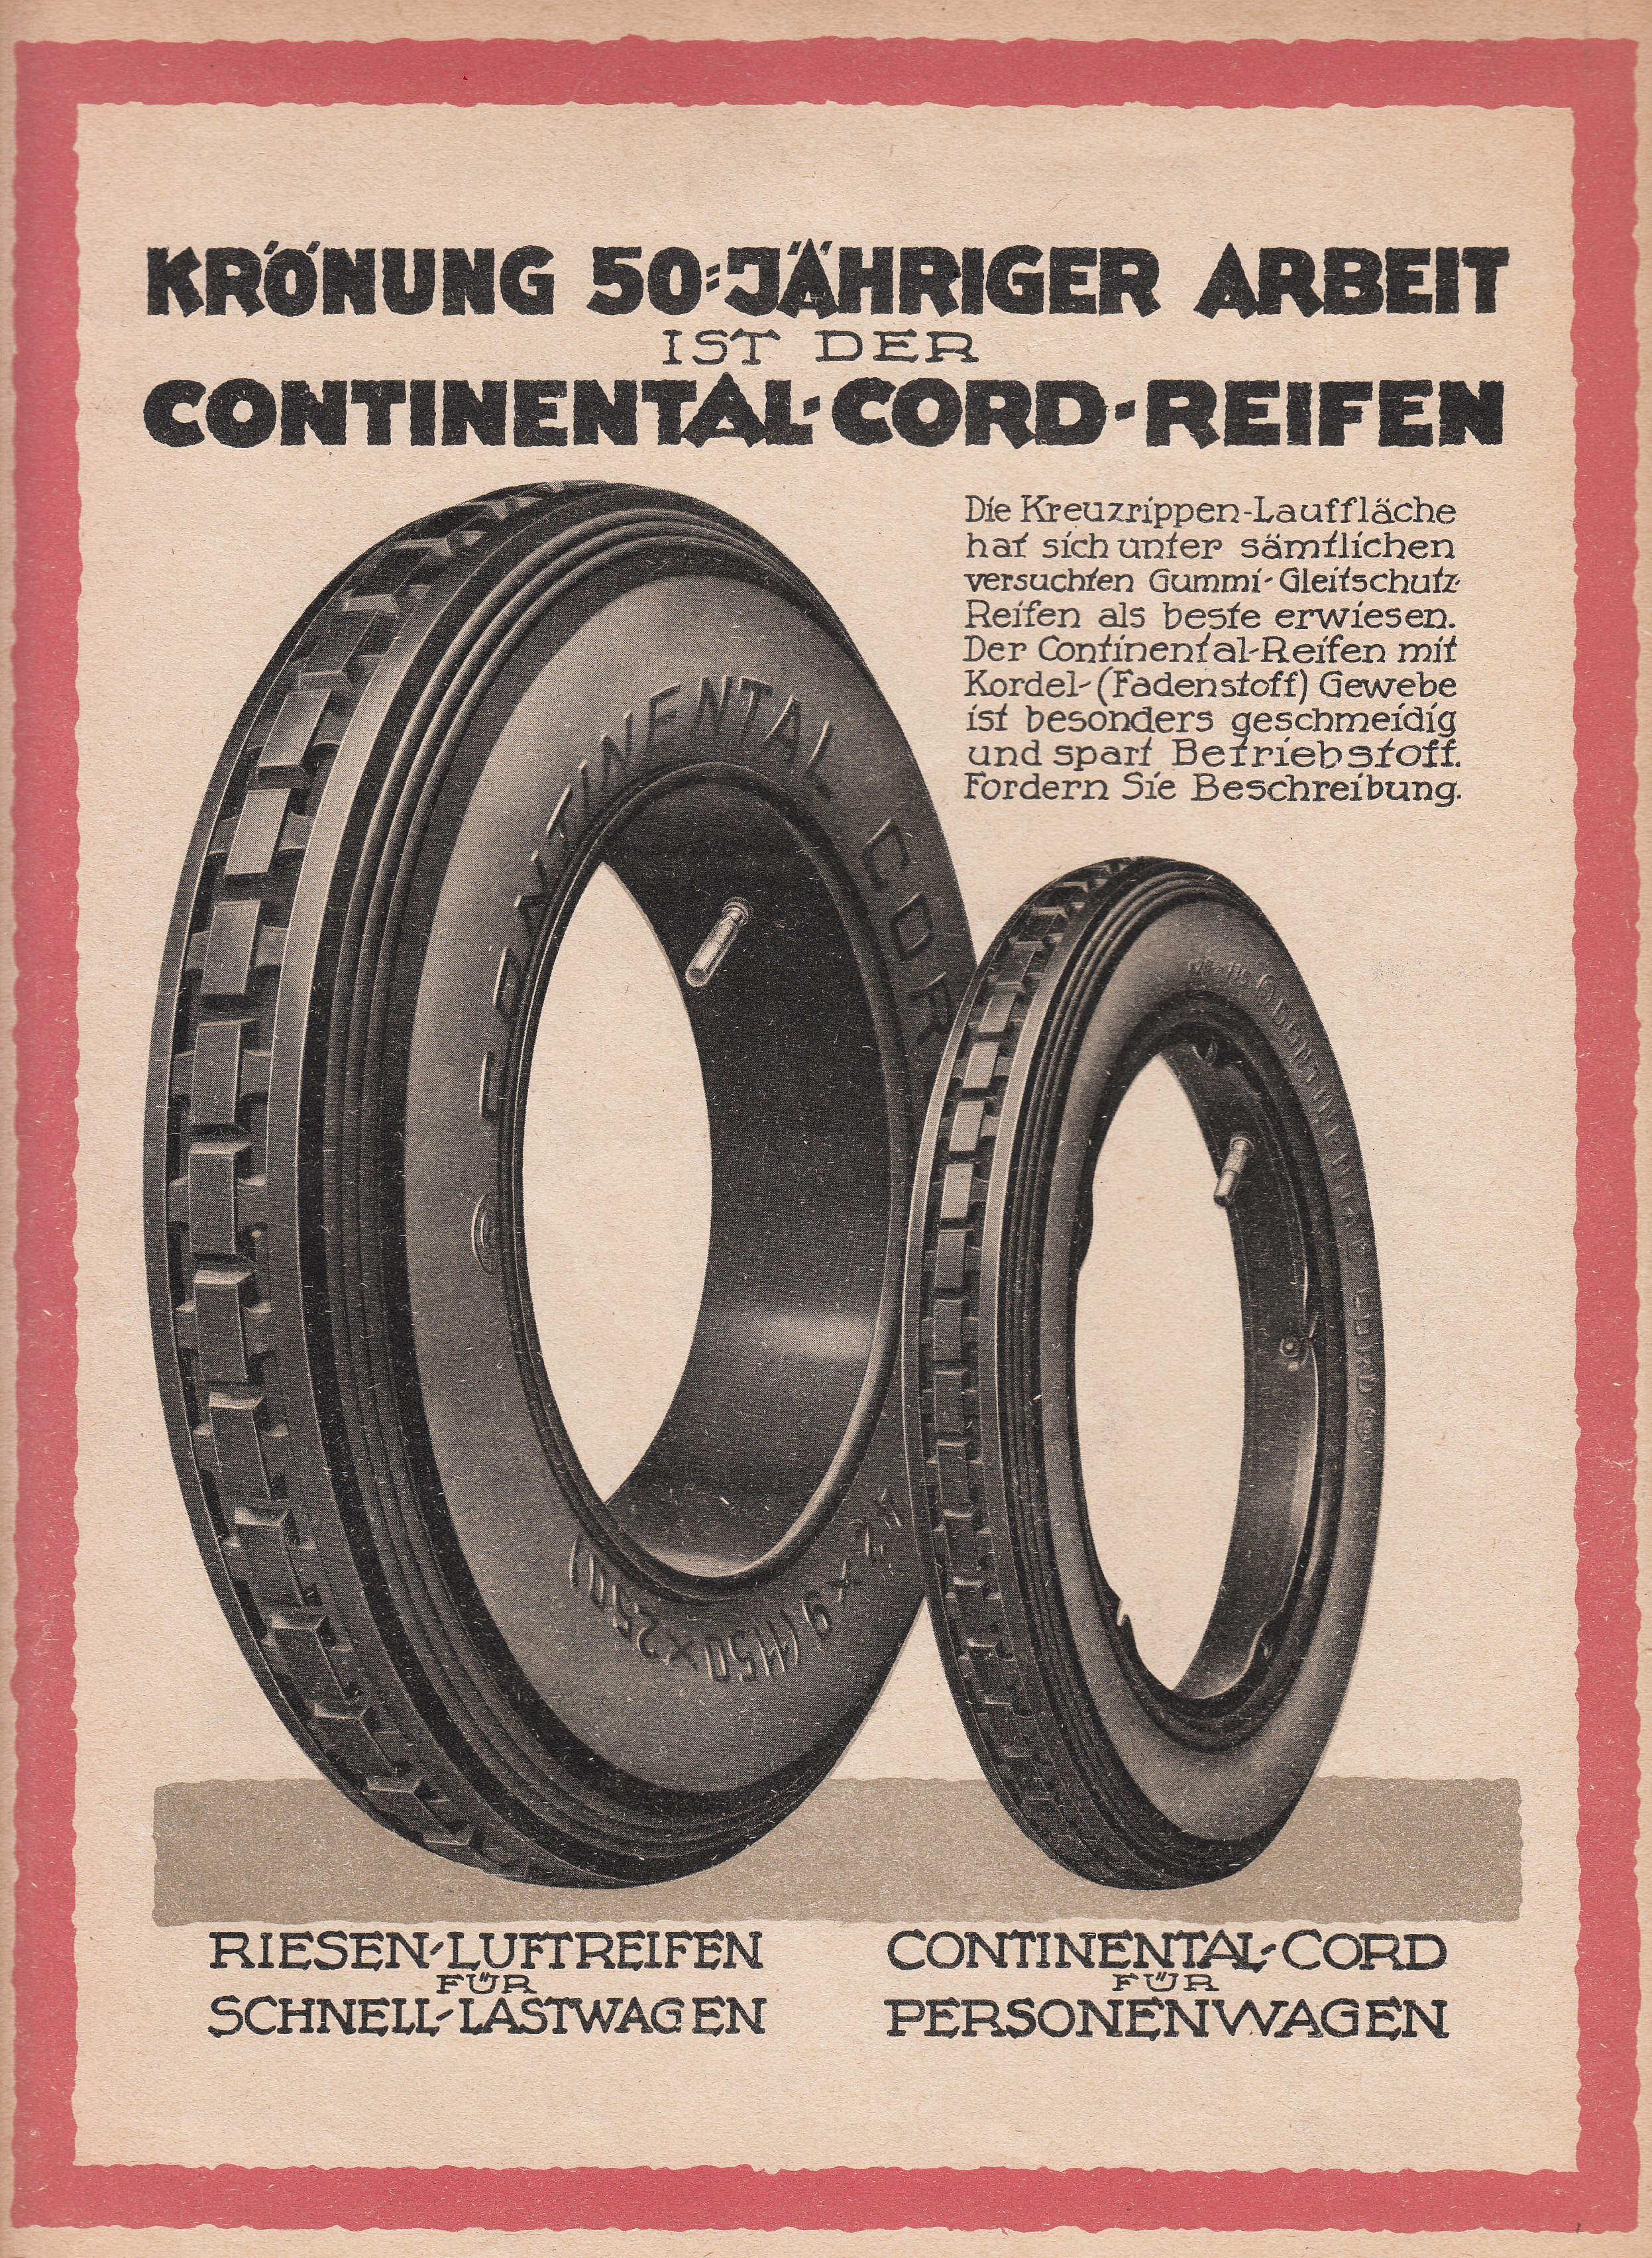 Der Continental-Reifen: Die kontinuierliche Neuerfindung Hightech-Produkts AG eines - Continental